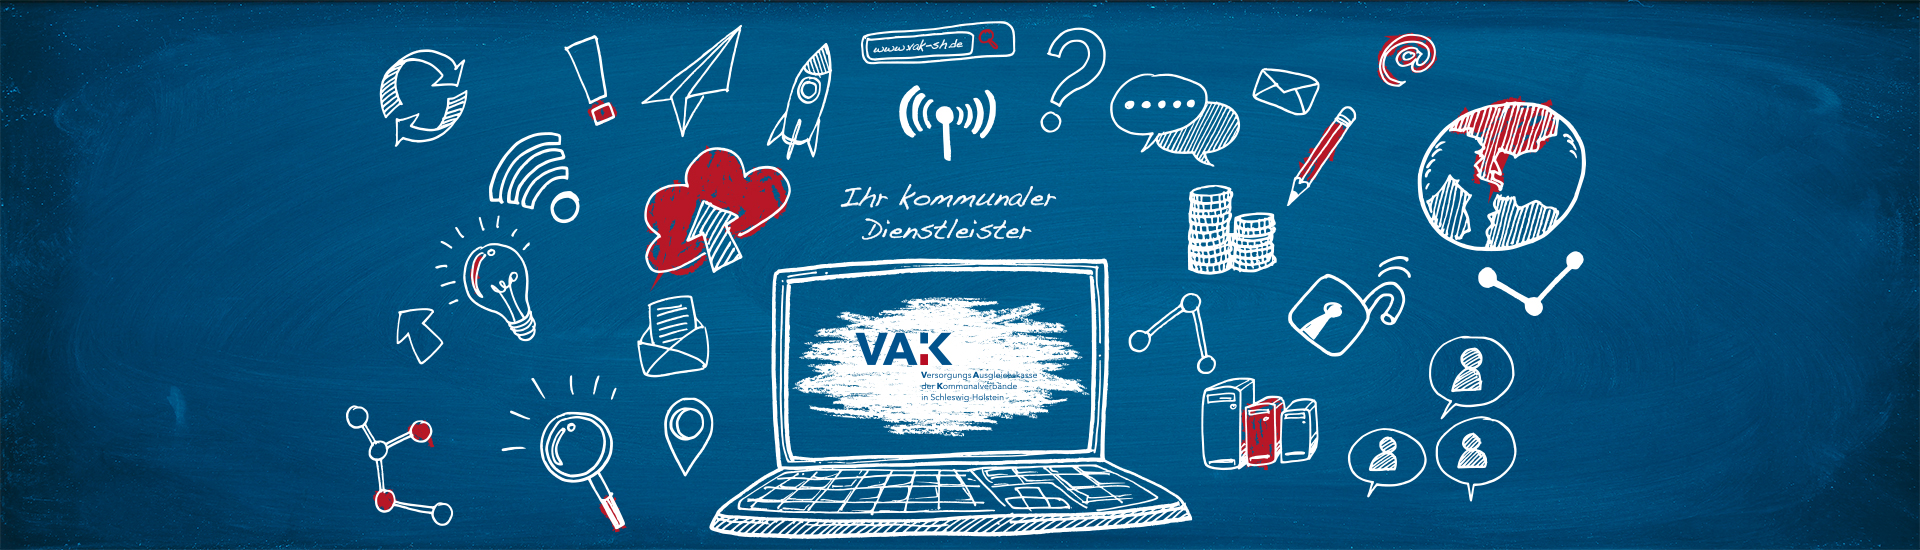 VAK_Website_Header-ihr-komm-dienstleister_1920x550px